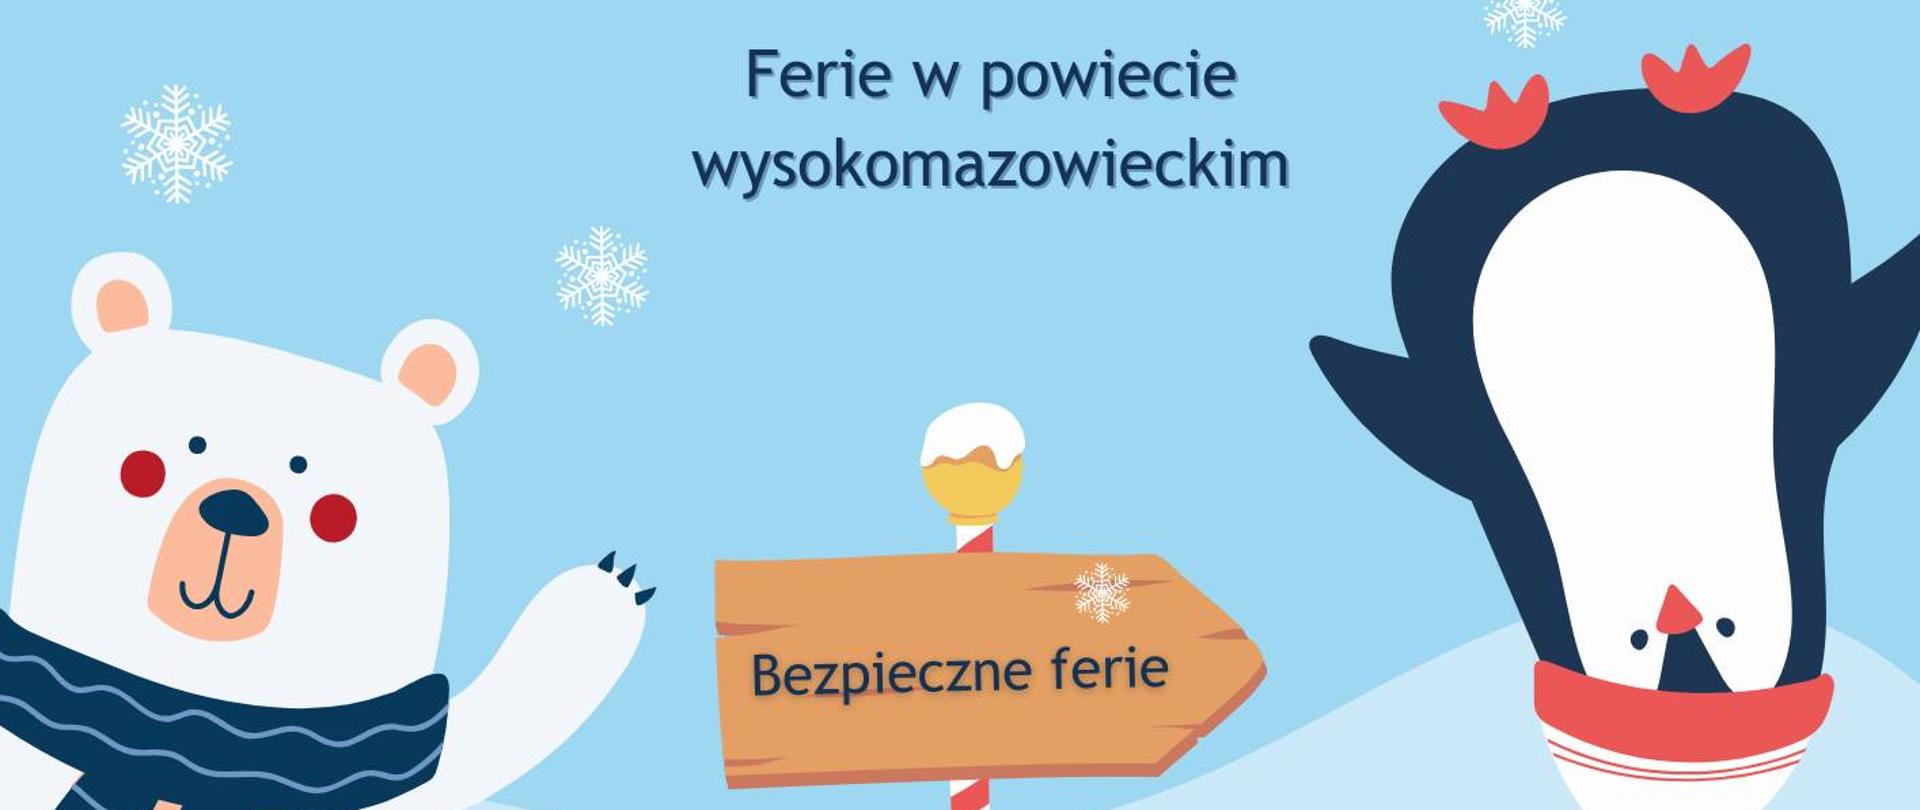 Plakat kolorowy w formie kreskówki. Biały misio w szaliku i pingwinek robiący fikołki na śniegu. Na środku drogowskaz z tekstem: "Bezpieczne ferie".